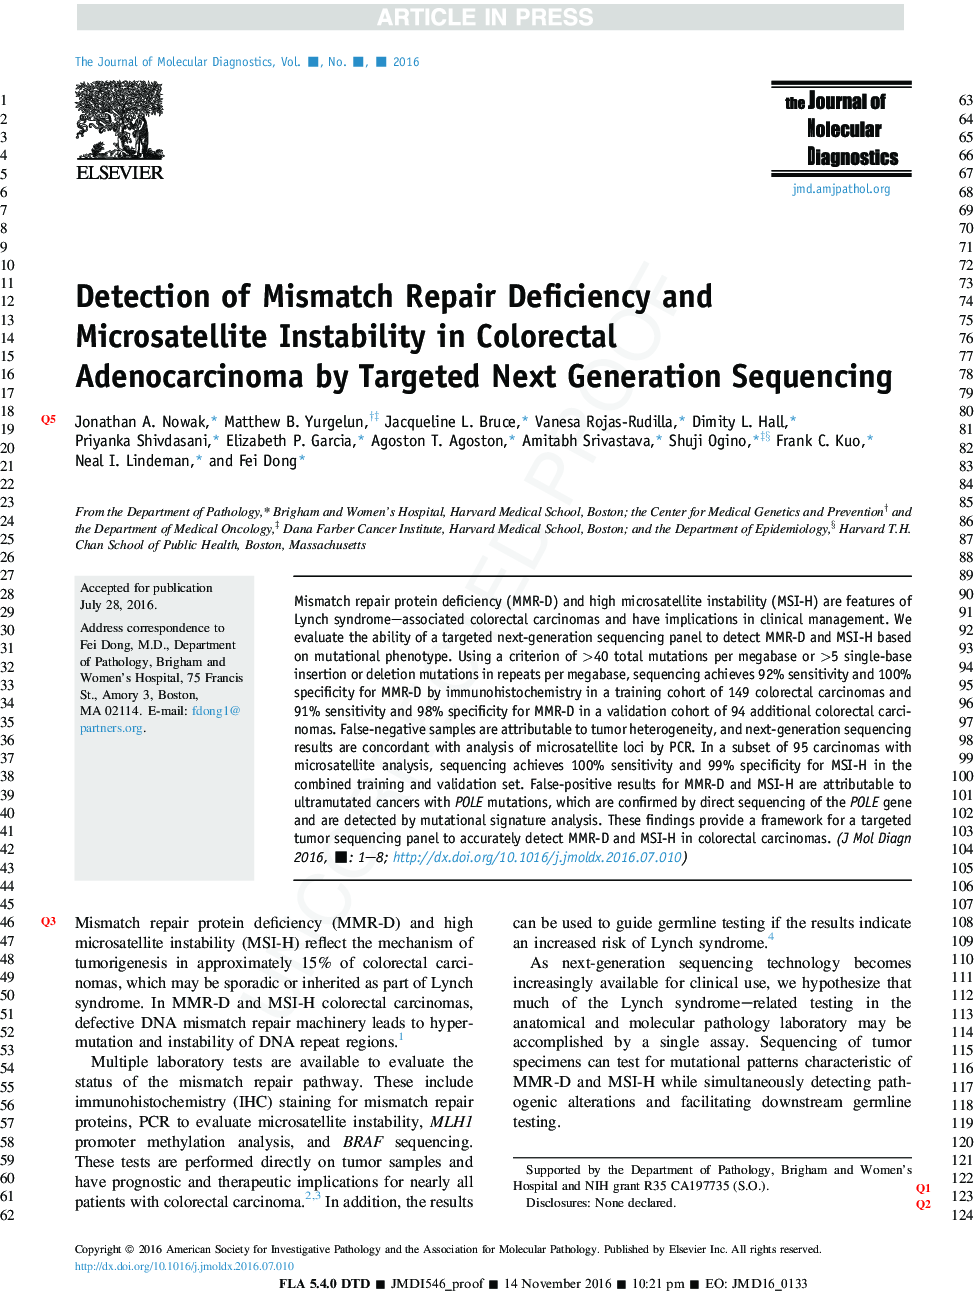 تشخیص نقص کمبود نقص و ناپایداری میکروسلایتال در آدنوکارسینوم کولورکتال با توالی های نسل بعد 